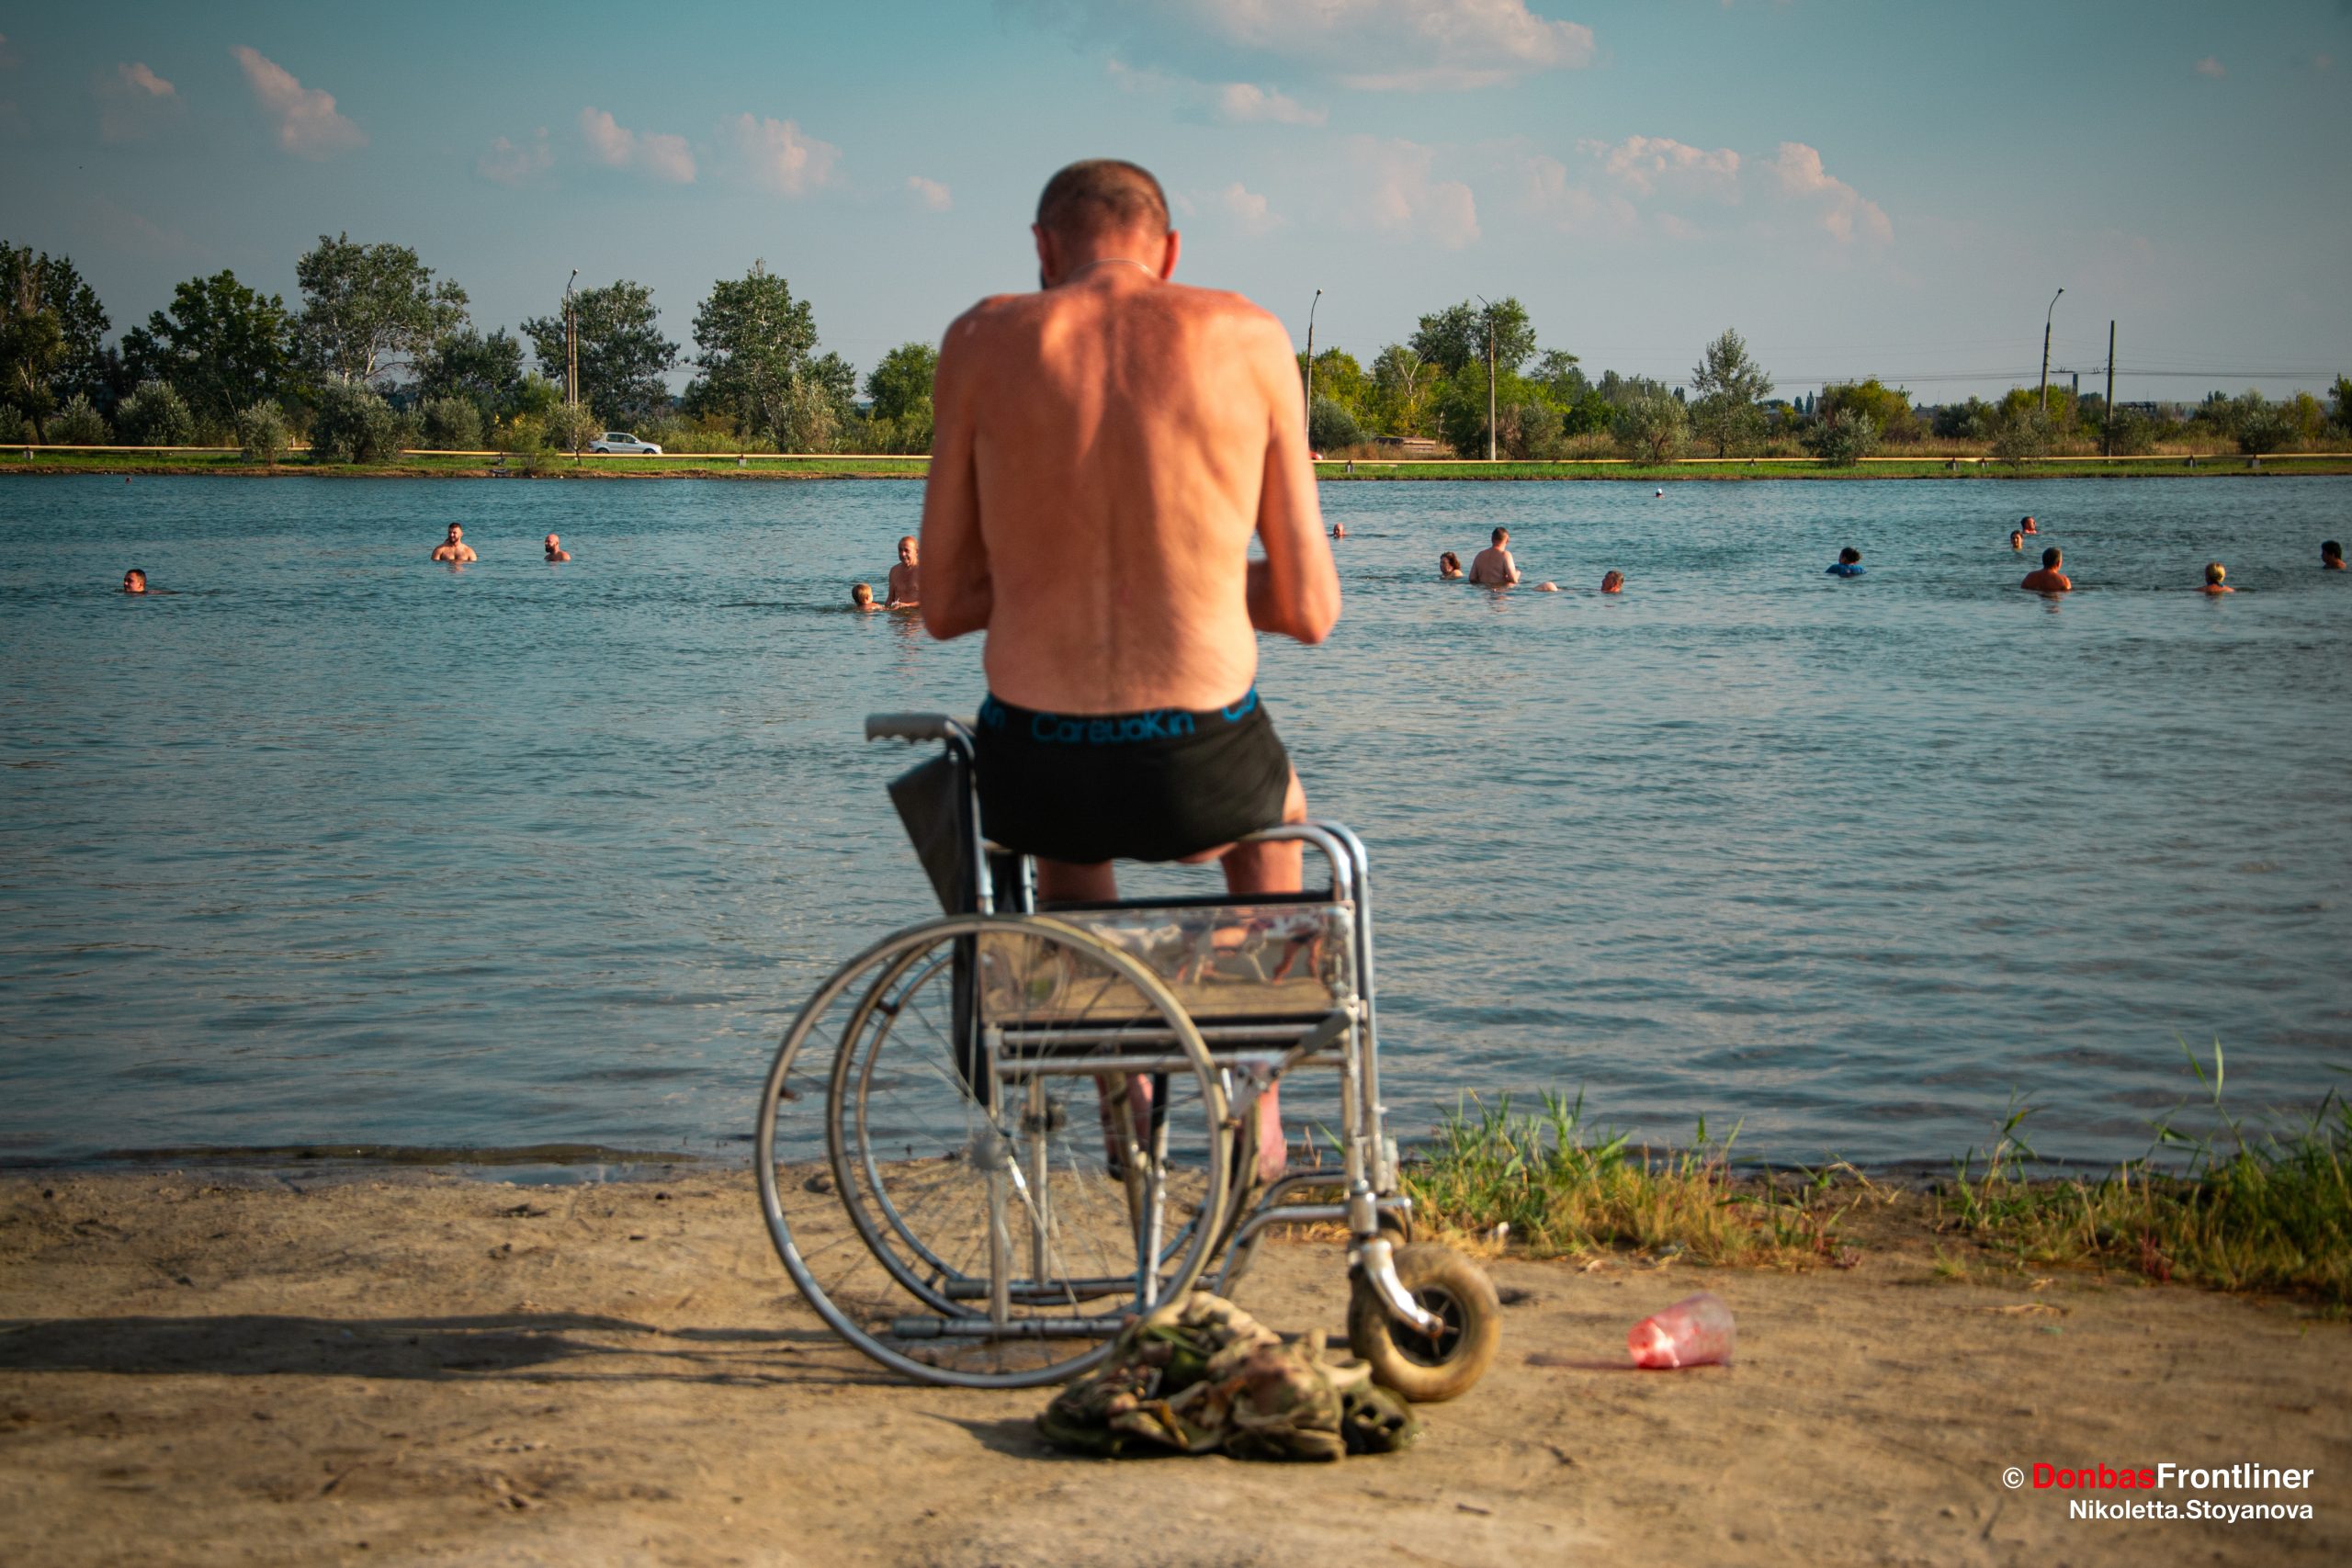 Солдат з ампутованими ступнями внаслідок підриву на міні сидить в інвалідному візку і дивиться на людей в озері під Слов'янськом. Він, ймовірно, ніколи більше не зможе плавати. Вересень. Слов'янськ, Донецька область Ніколєтта Стоянова / Donbas Frontliner